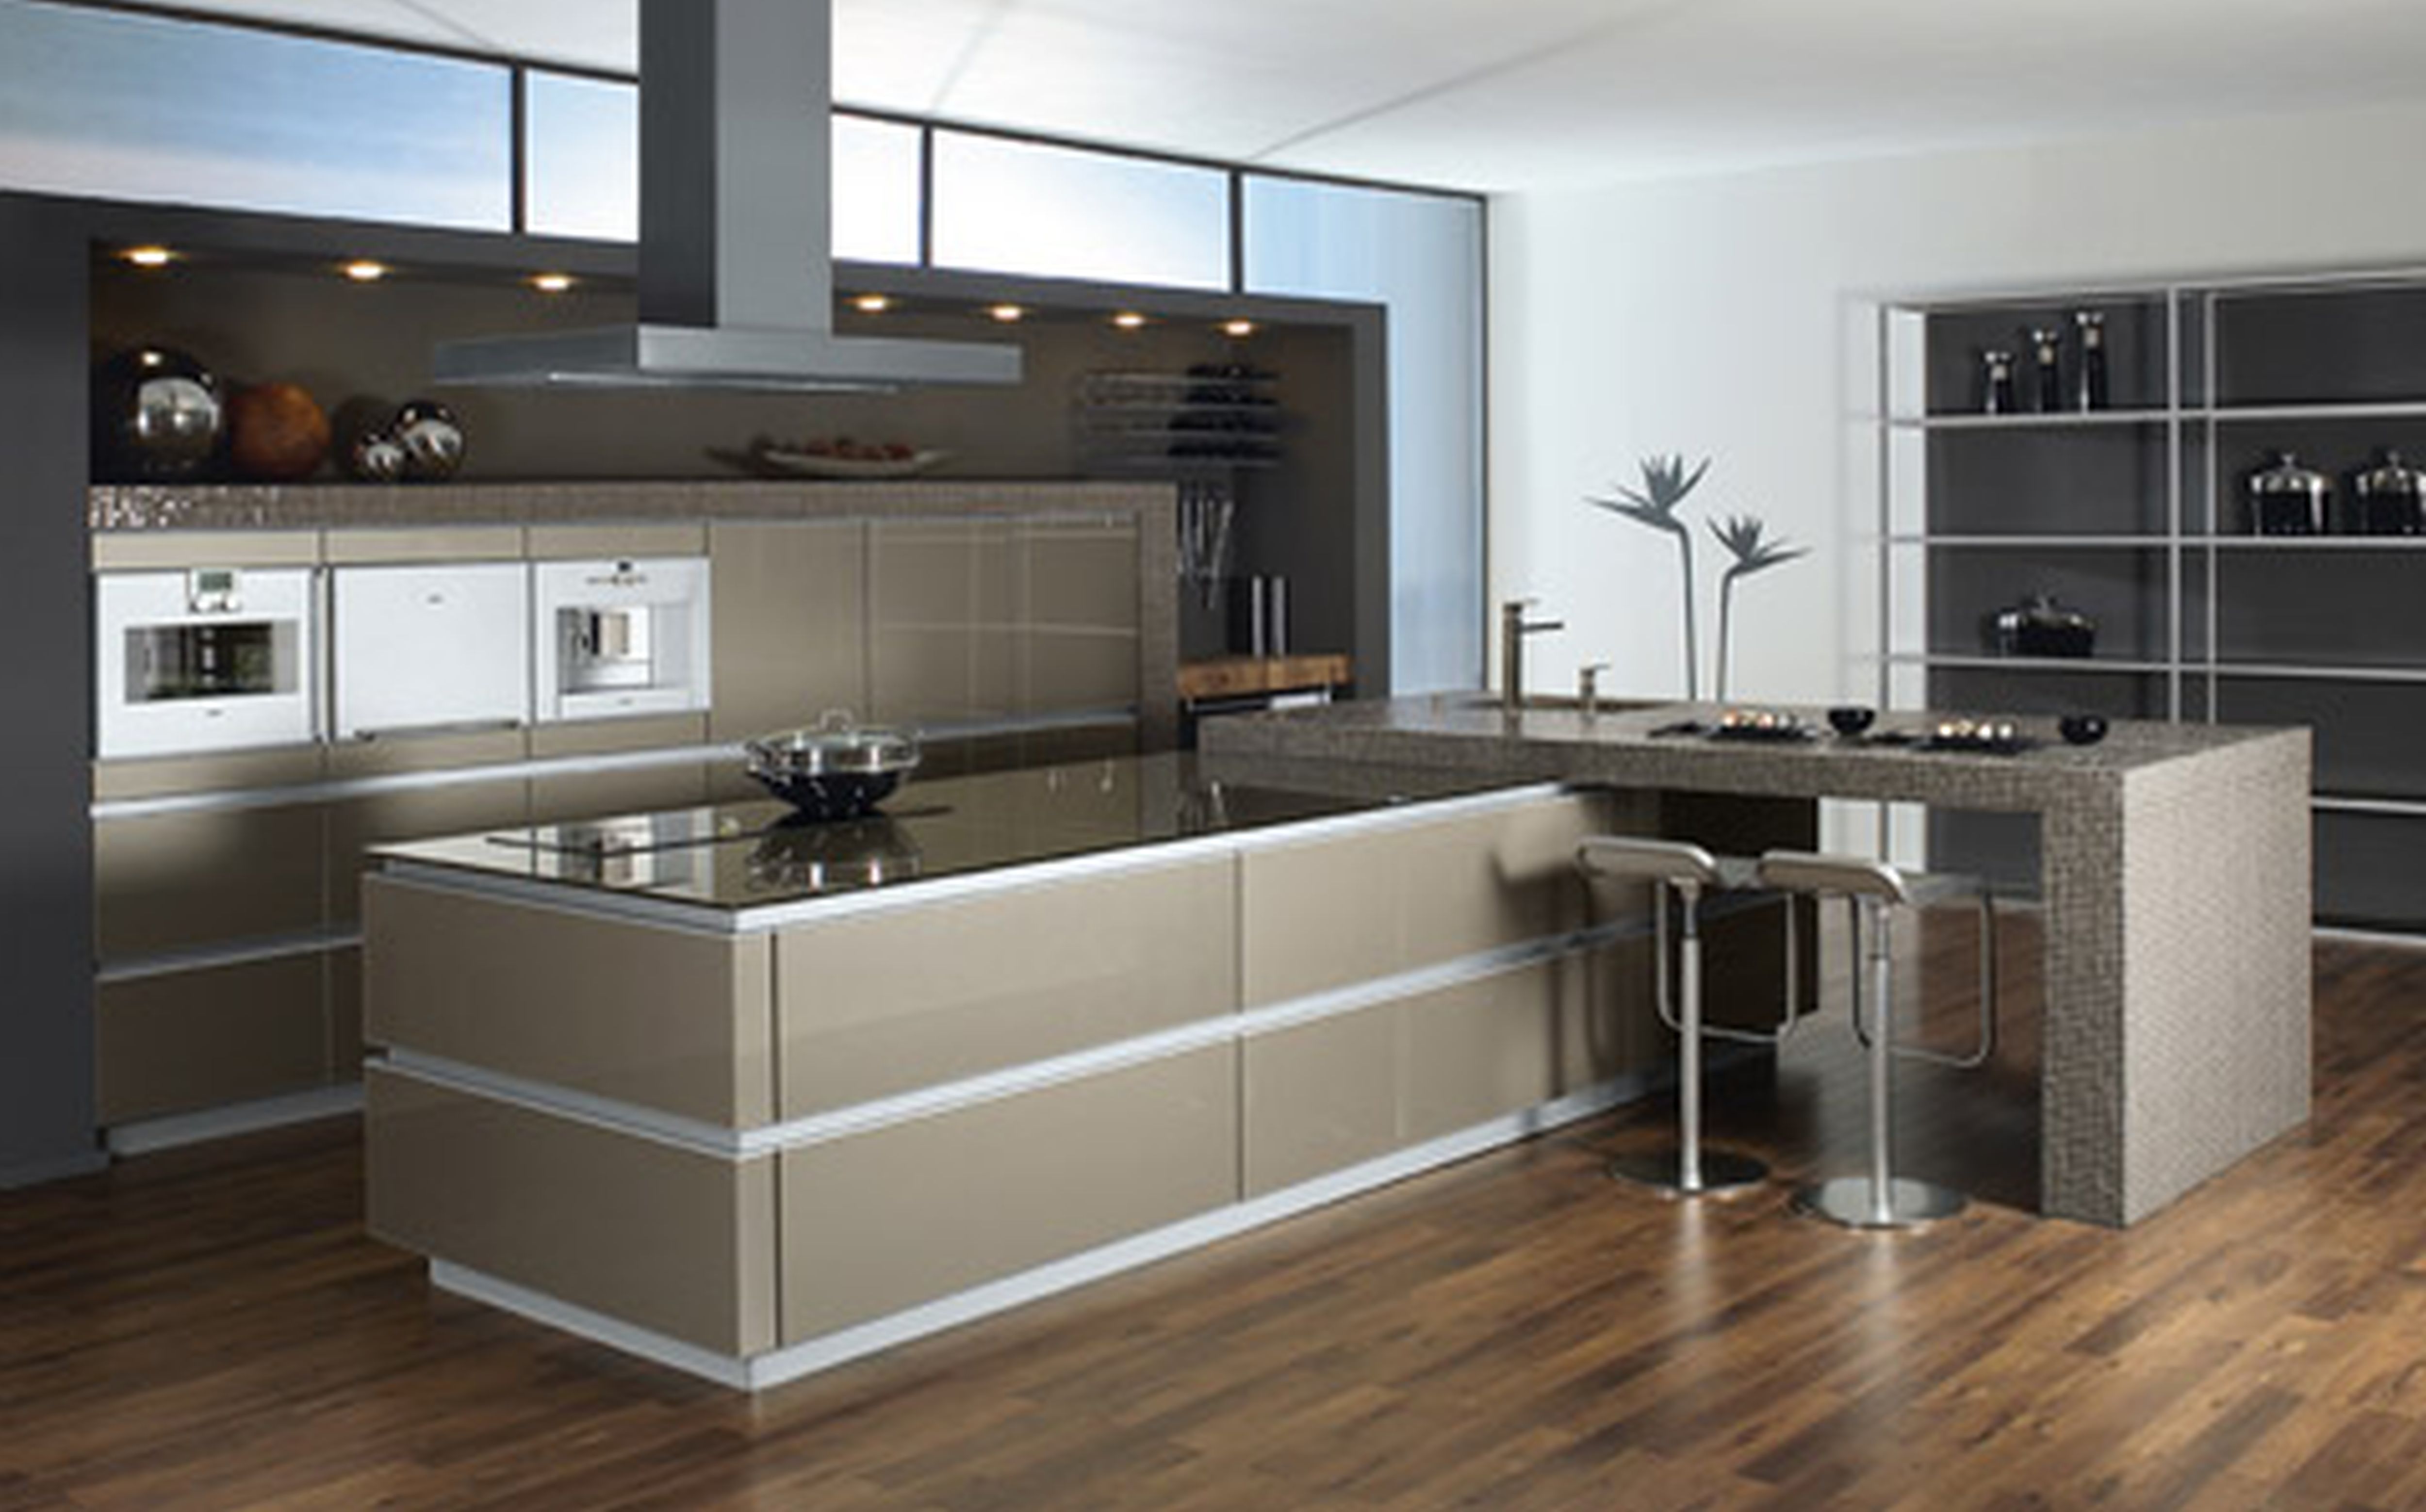  new modern kitchen design